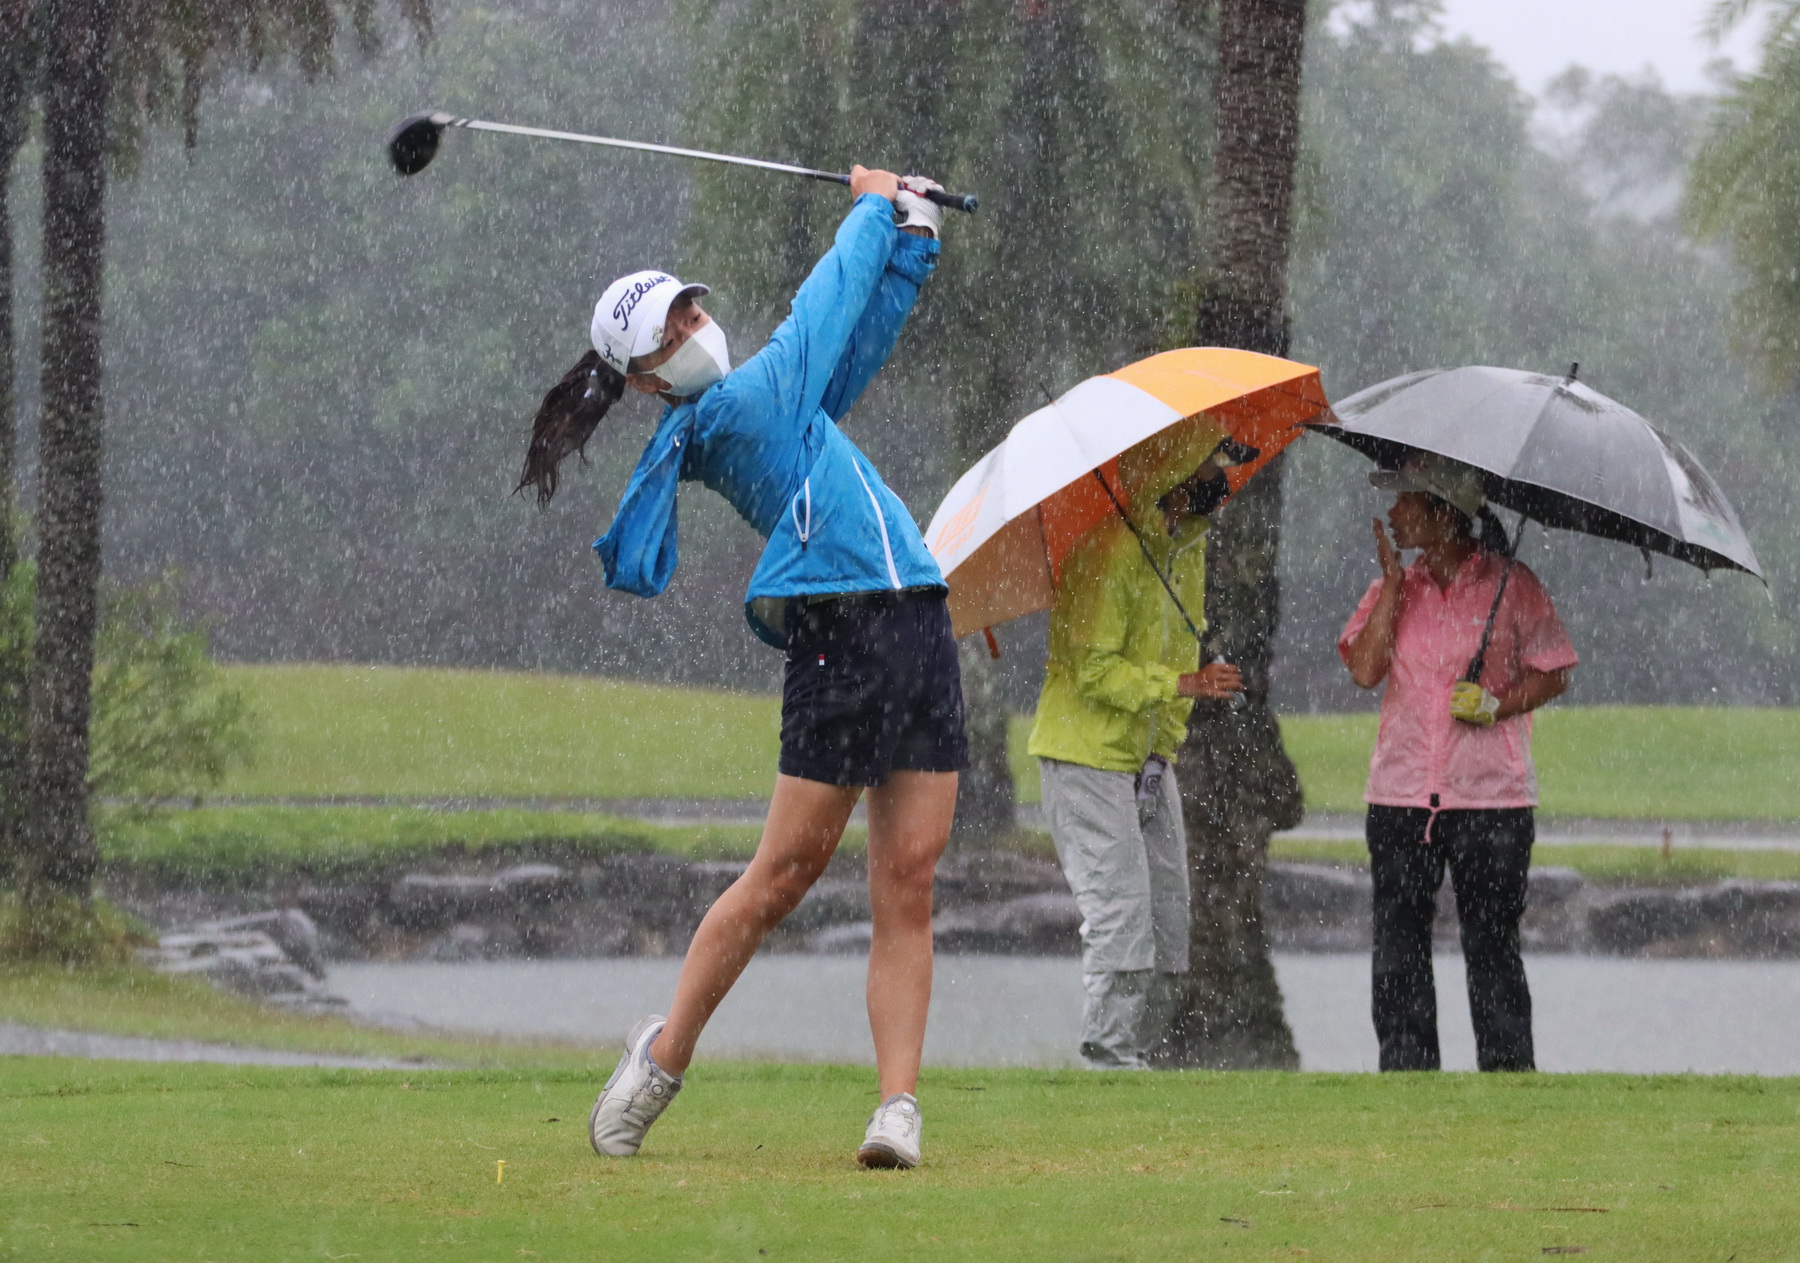 梅花颱風擦邊掠過引發大雨不斷選手雨中奮戰。鍾豐榮攝影